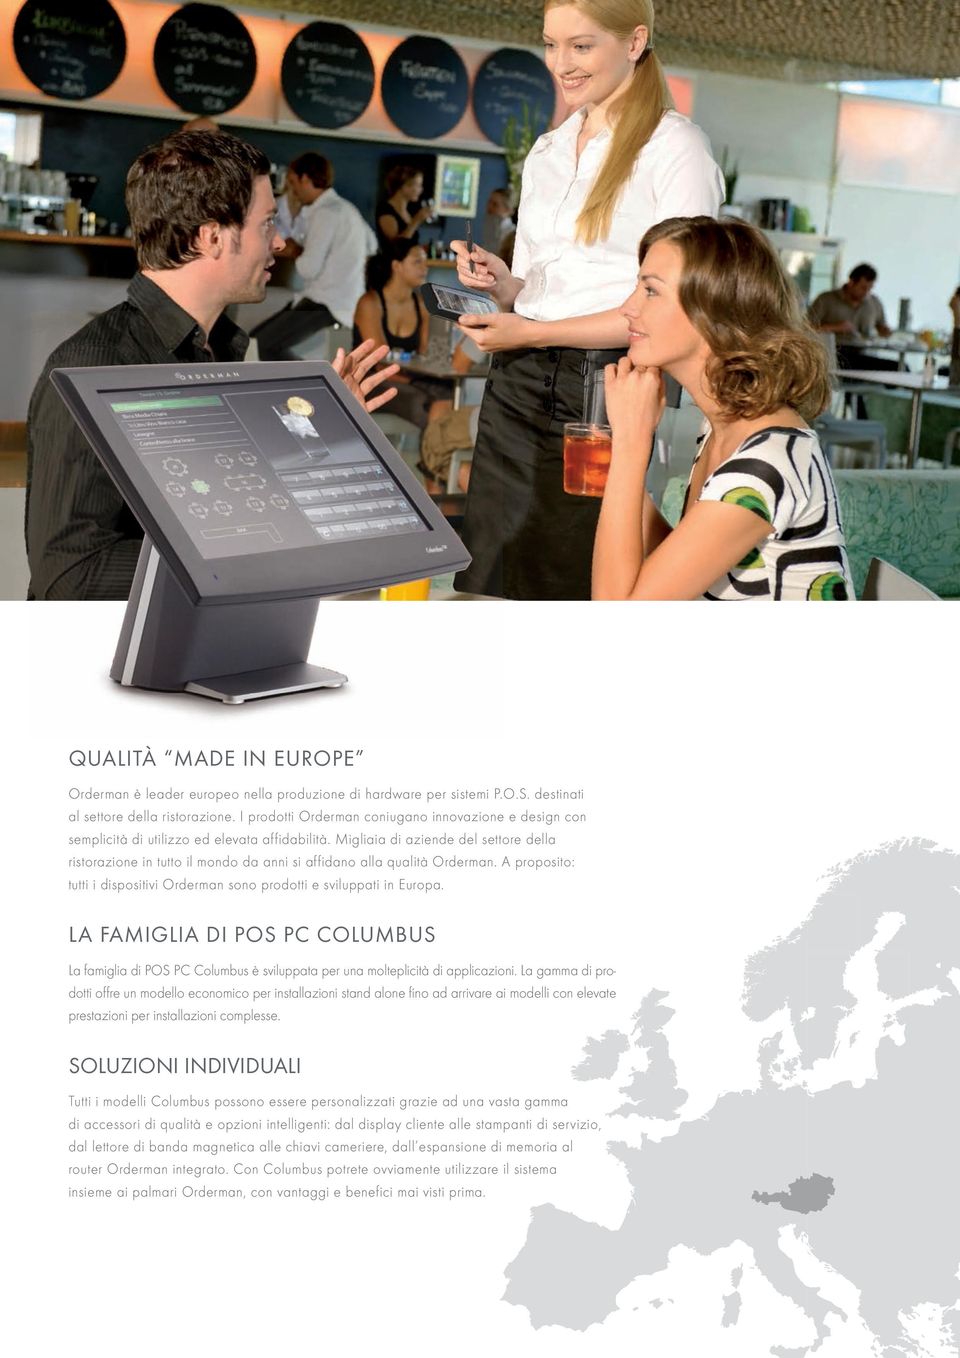 Migliaia di aziende del settore della ristorazione in tutto il mondo da anni si affidano alla qualità Orderman. A proposito: tutti i dispositivi Orderman sono prodotti e sviluppati in Europa.